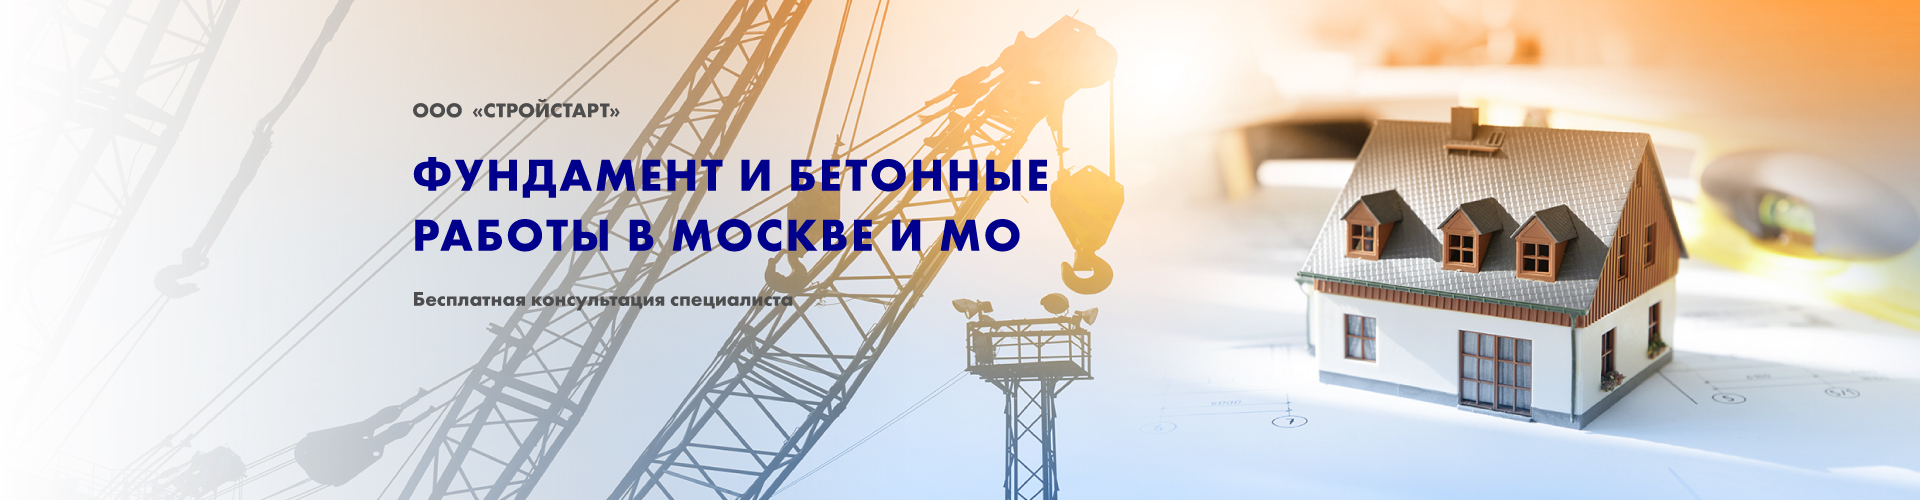 Фундамент и бетонные работы в Москве и Московской области